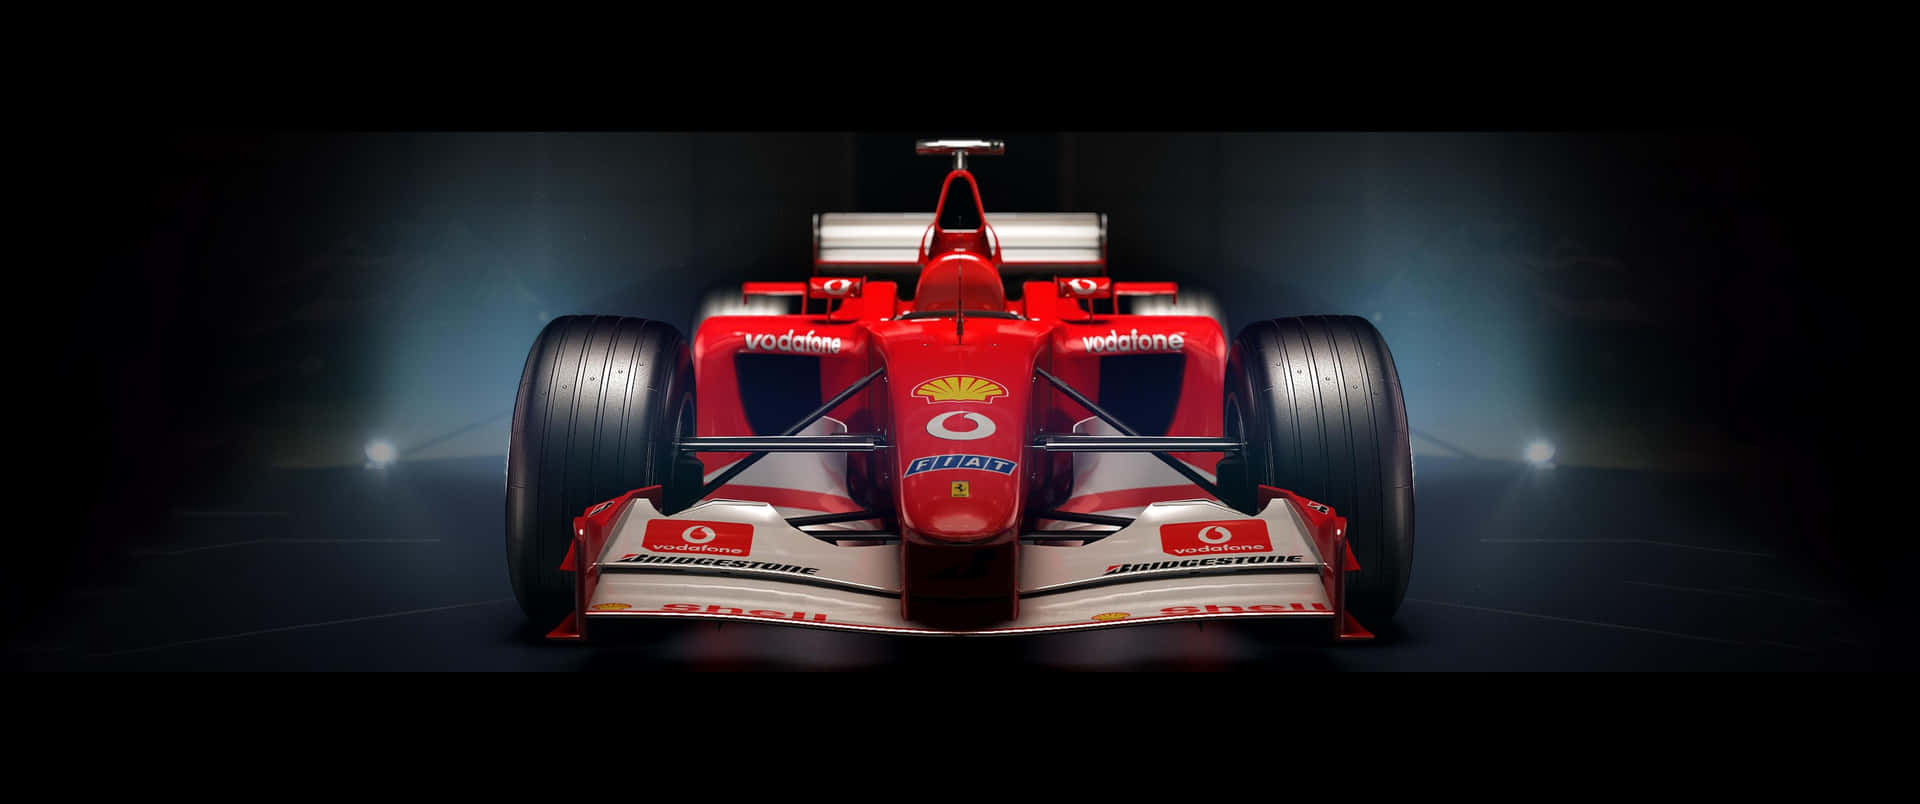 3440x1440p Ferrari Background Video Game